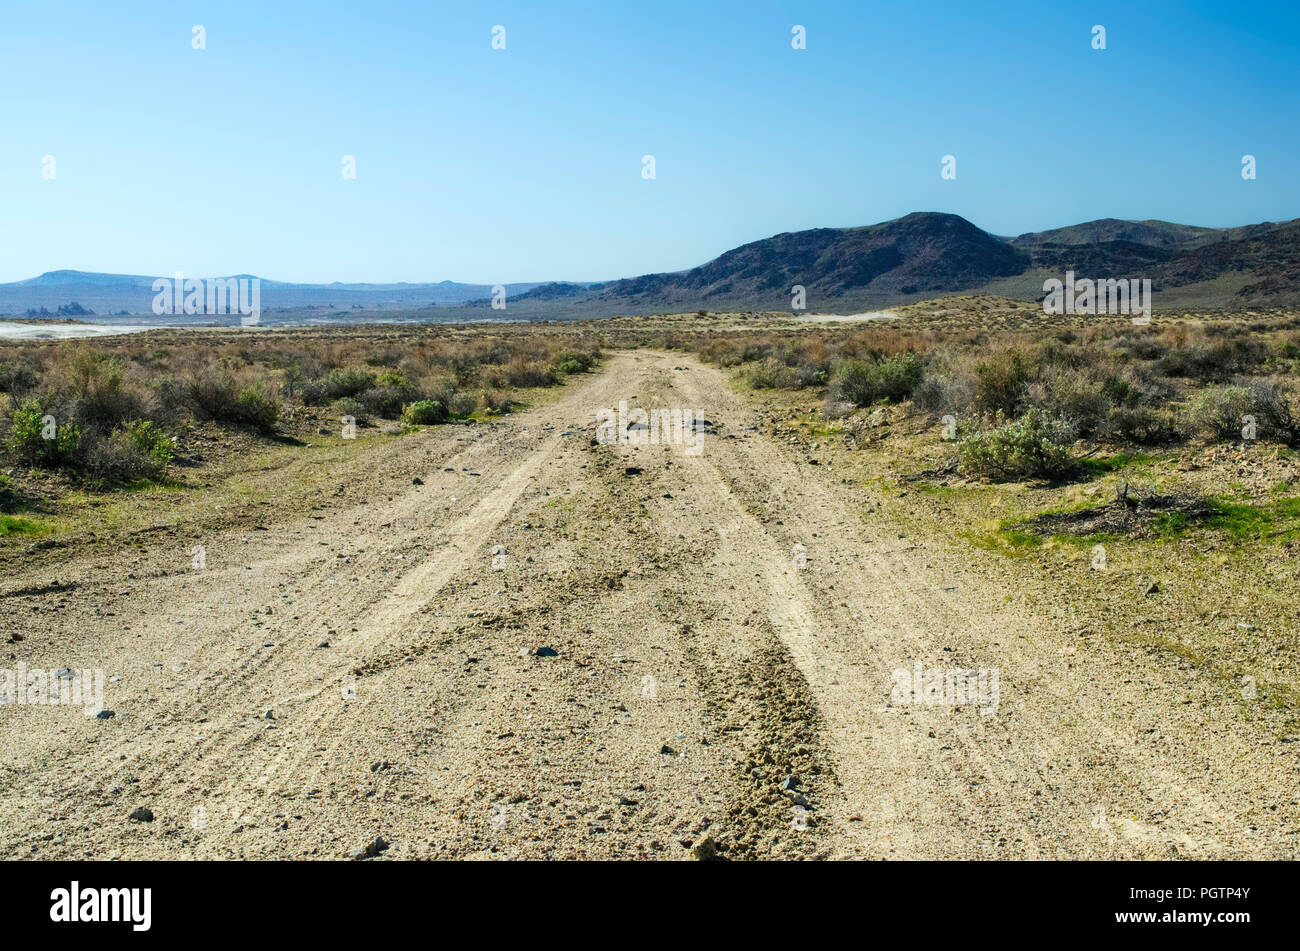 Strada sterrata circondata da verdi piante del deserto in direzione di montagne brulle sotto un cielo blu chiaro. Foto Stock